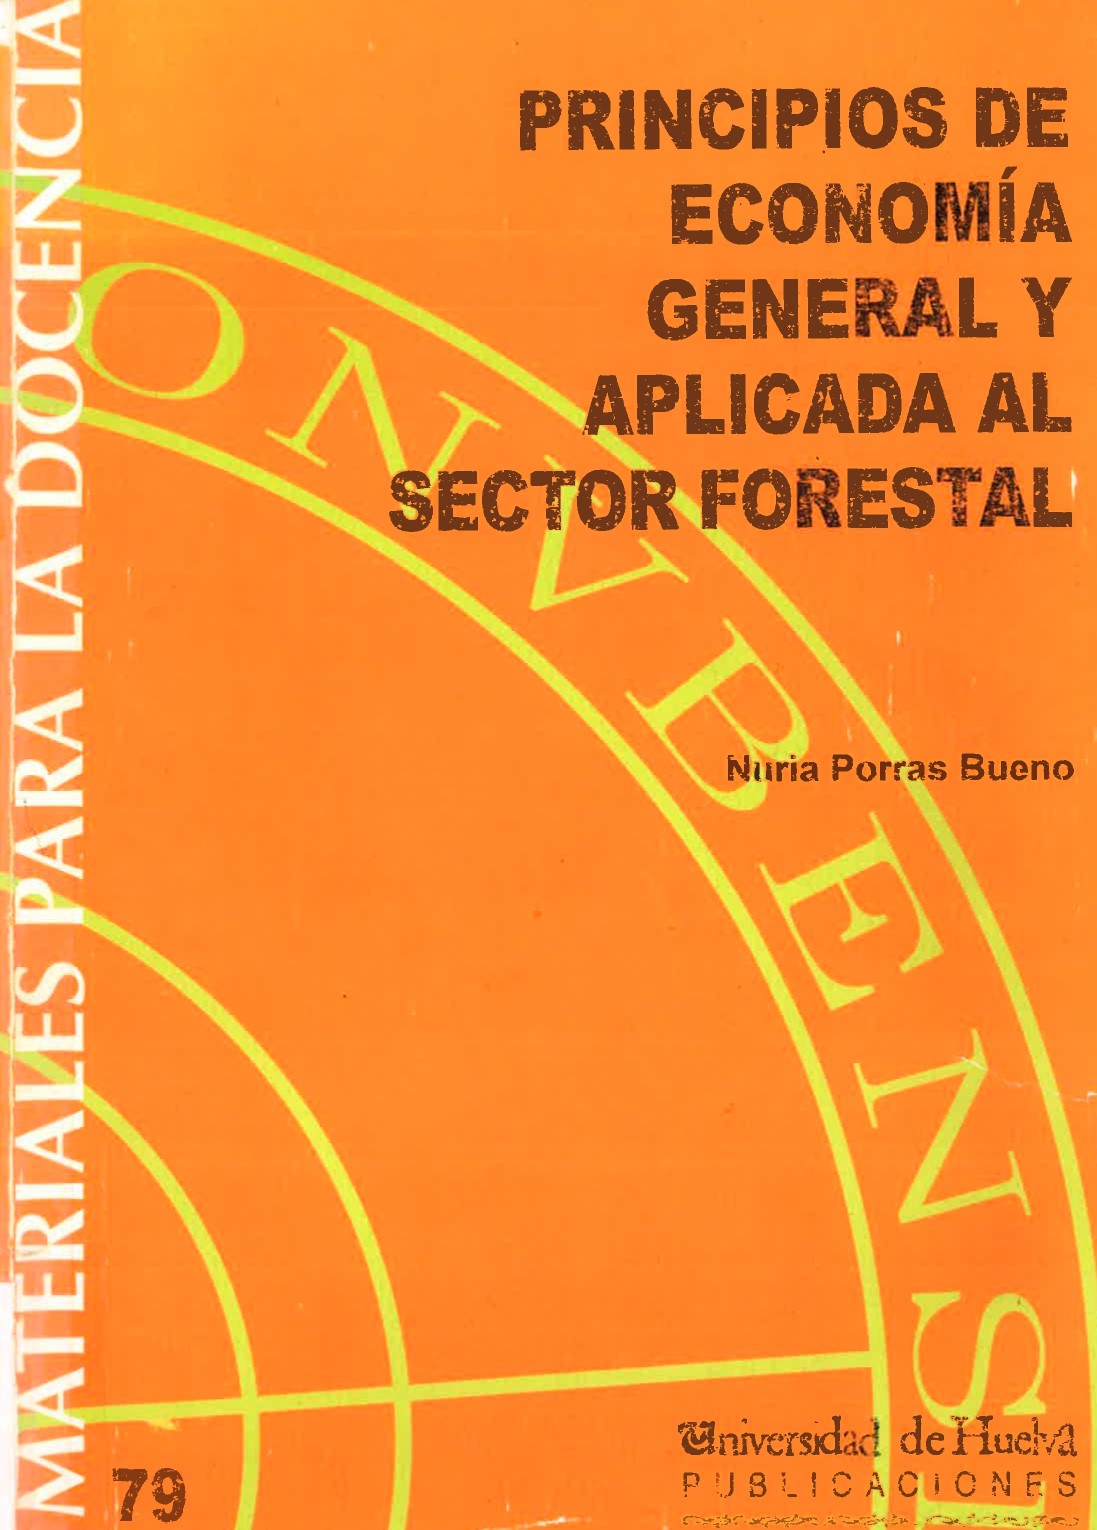 Imagen de portada del libro Principios de Economía General y Aplicada al Sector Forestal